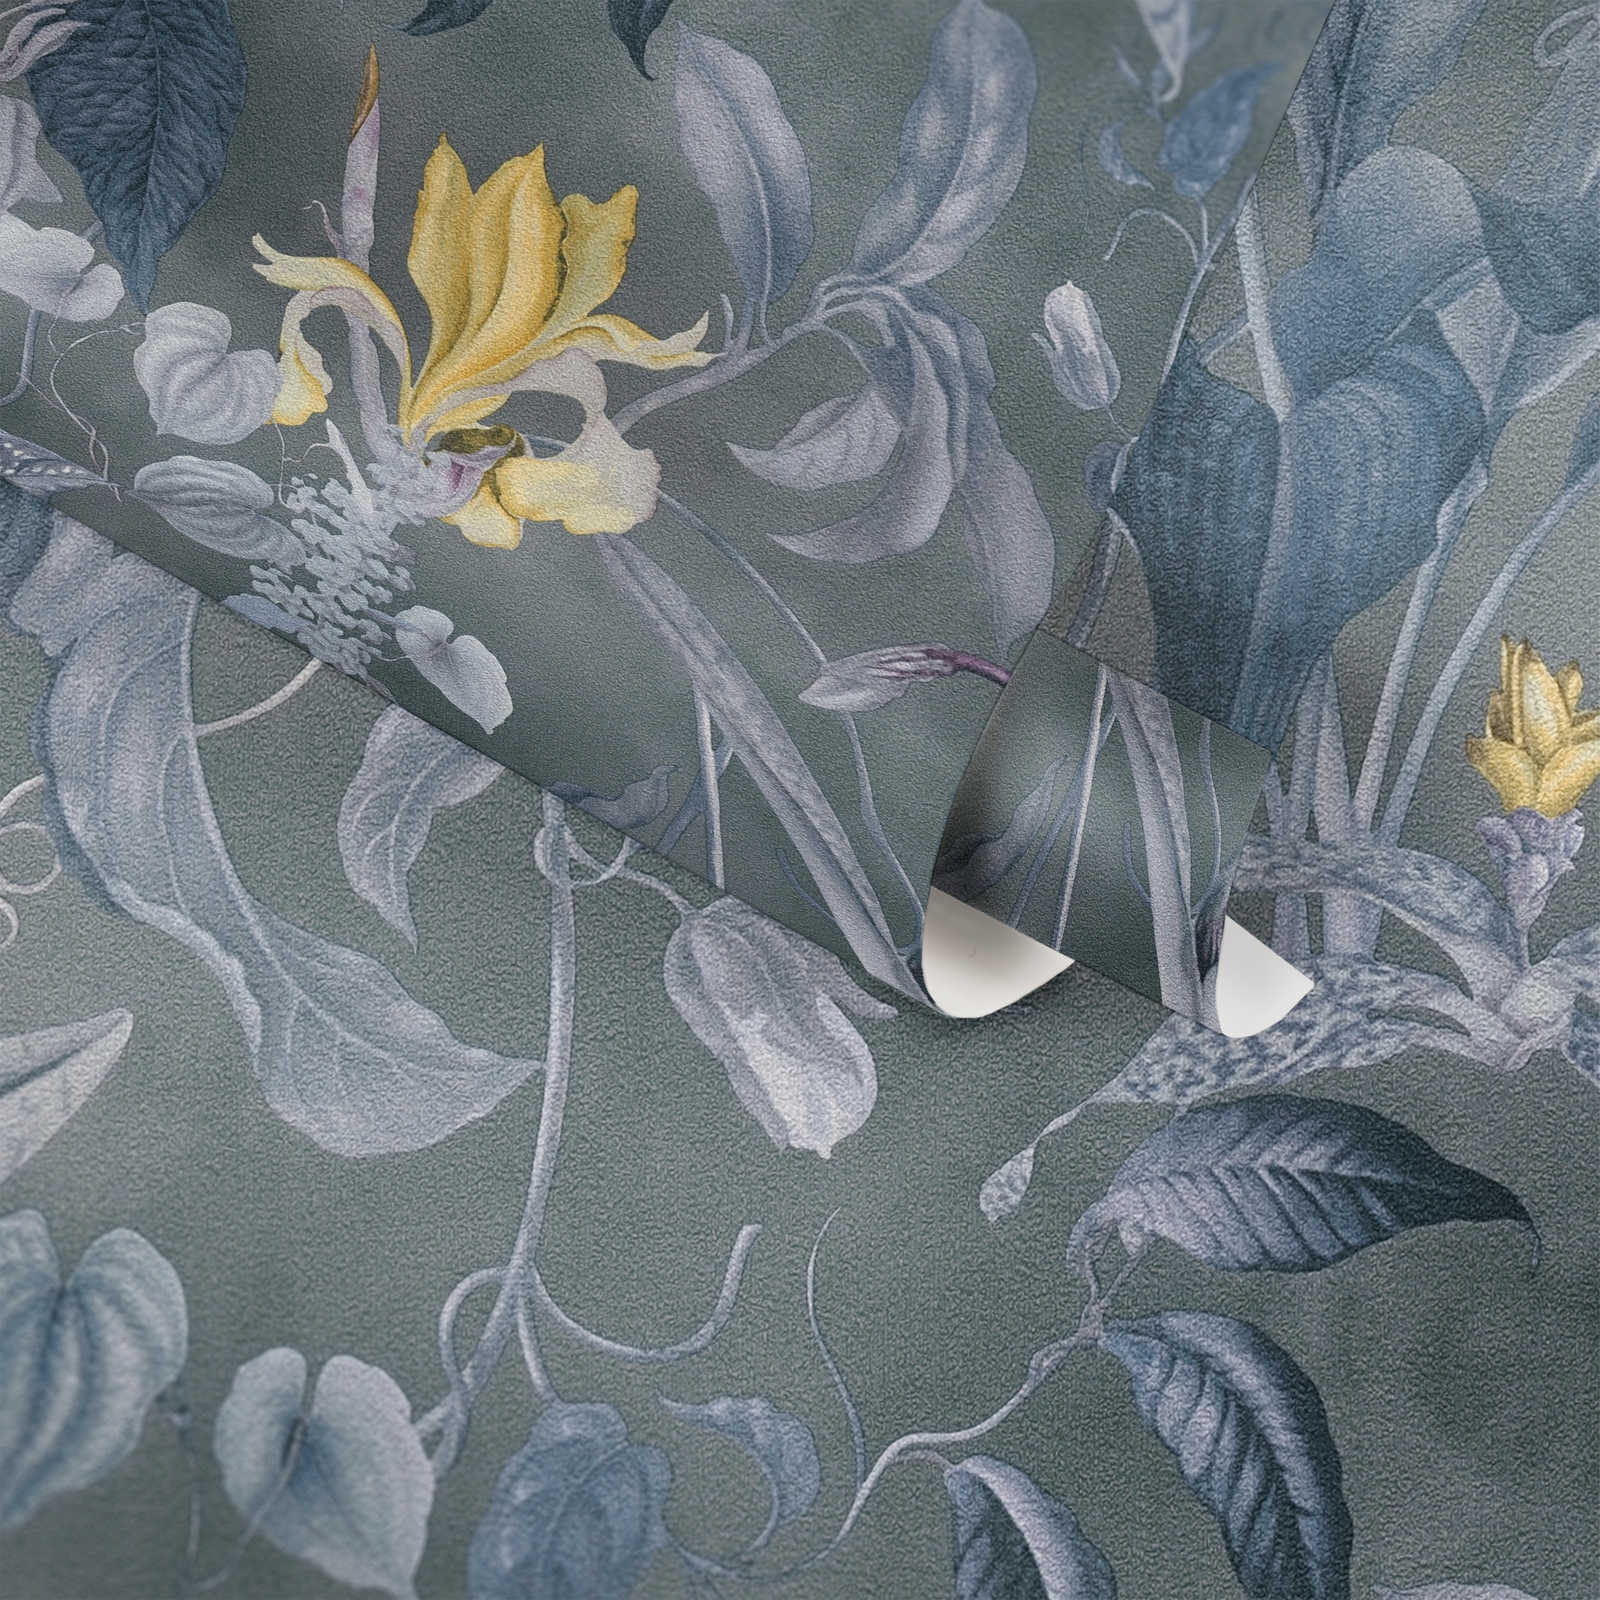             Tropische Blumentapete Grau-Blau, Design by MICHALSKY
        